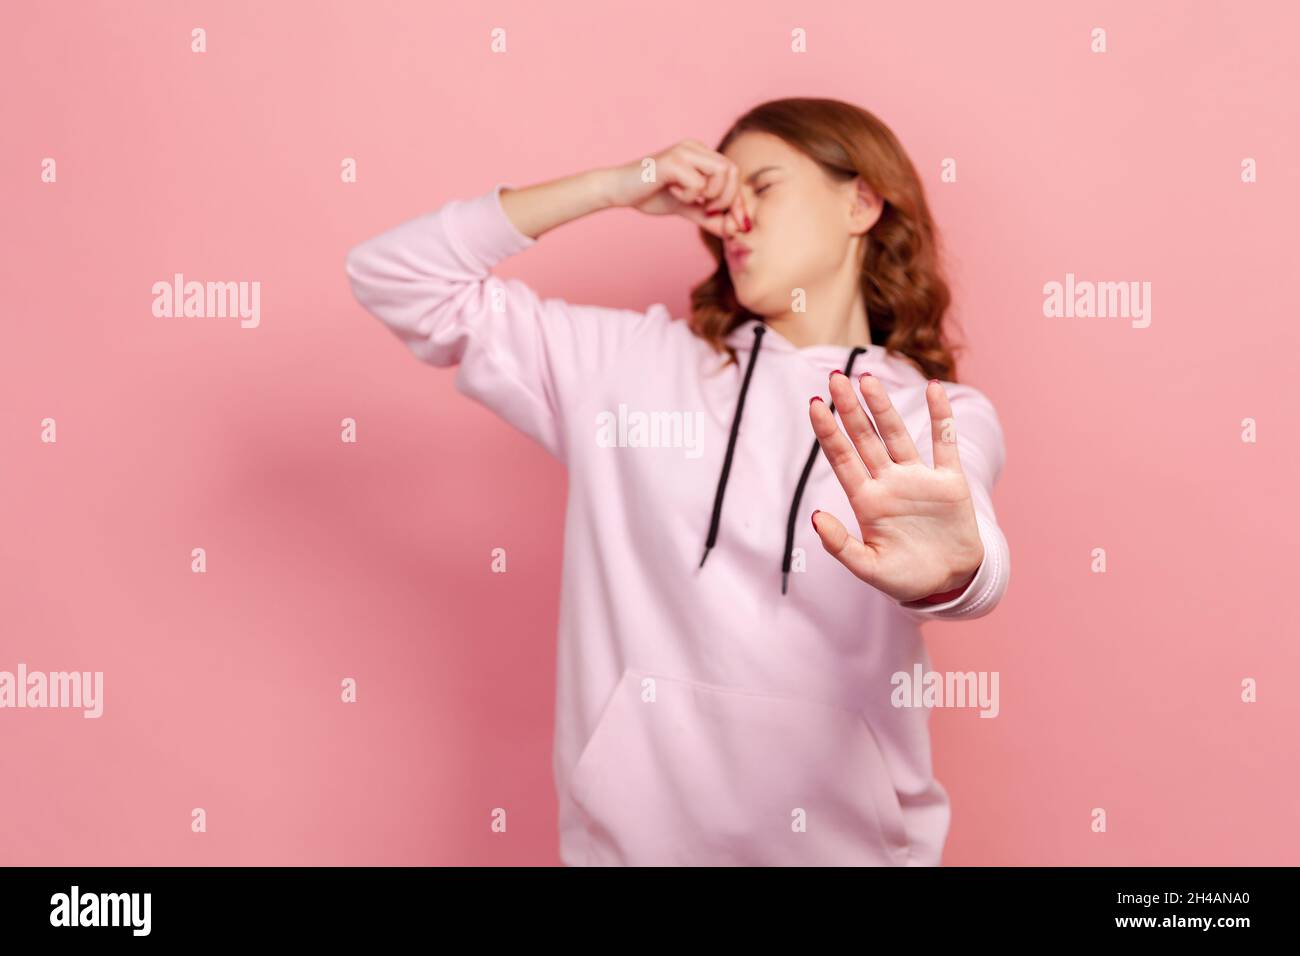 Porträt eines unangenehmen Teenagers im Hoodie Grimacing vor Ekel und Atem anhalten, Nase greifen und Stop zeigen, um stinkenden Geruch, fart Gase zu vermeiden. Innenaufnahme des Studios isoliert auf rosa Hintergrund Stockfoto